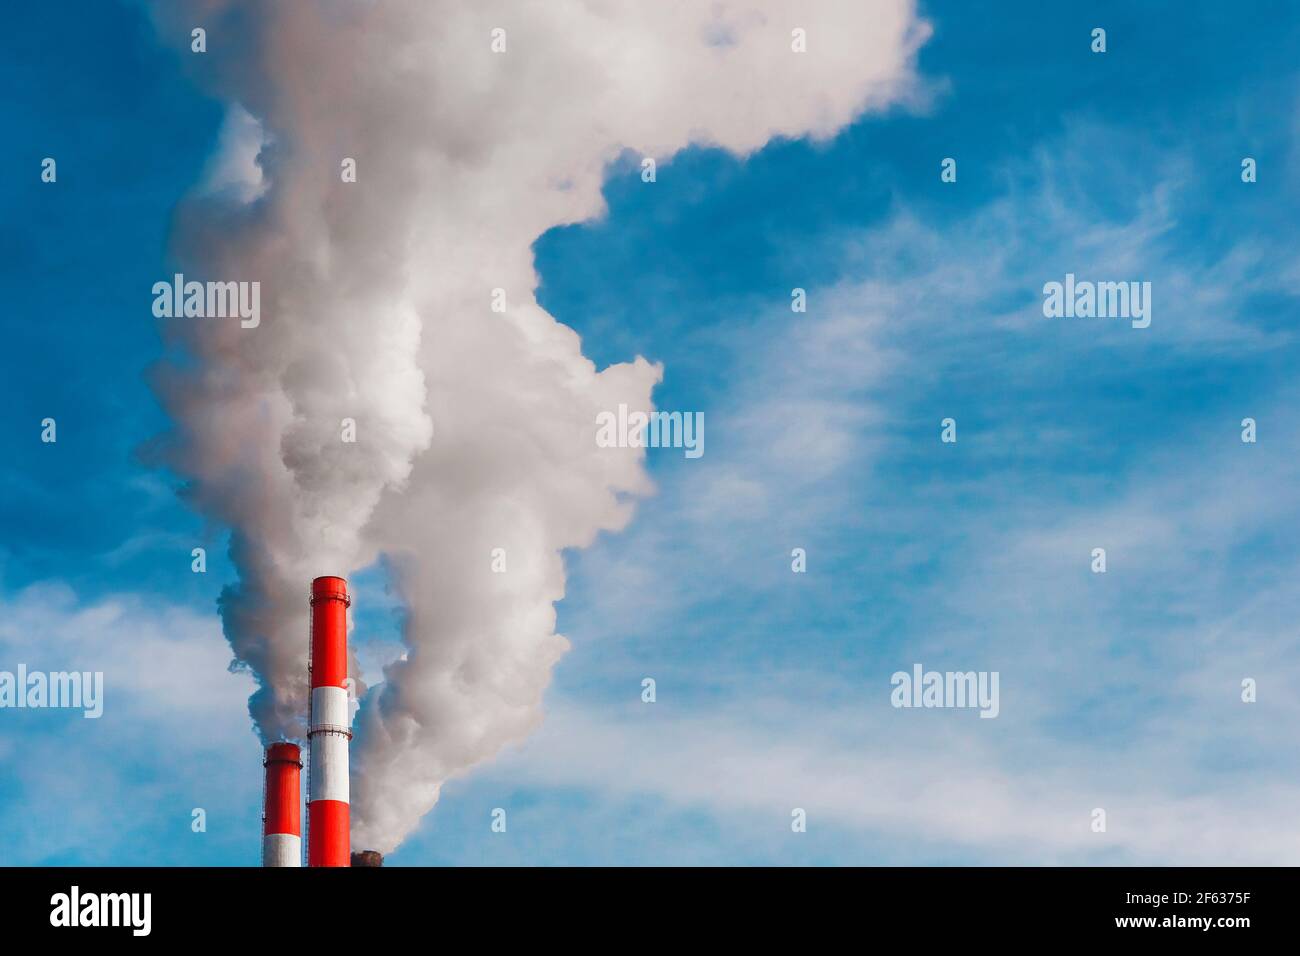 Umweltverschmutzung, Umweltproblem, Rauch aus dem Schornstein einer Industrieanlage oder thermisches Kraftwerk auf einem Hintergrund des blauen Himmels mit Stockfoto